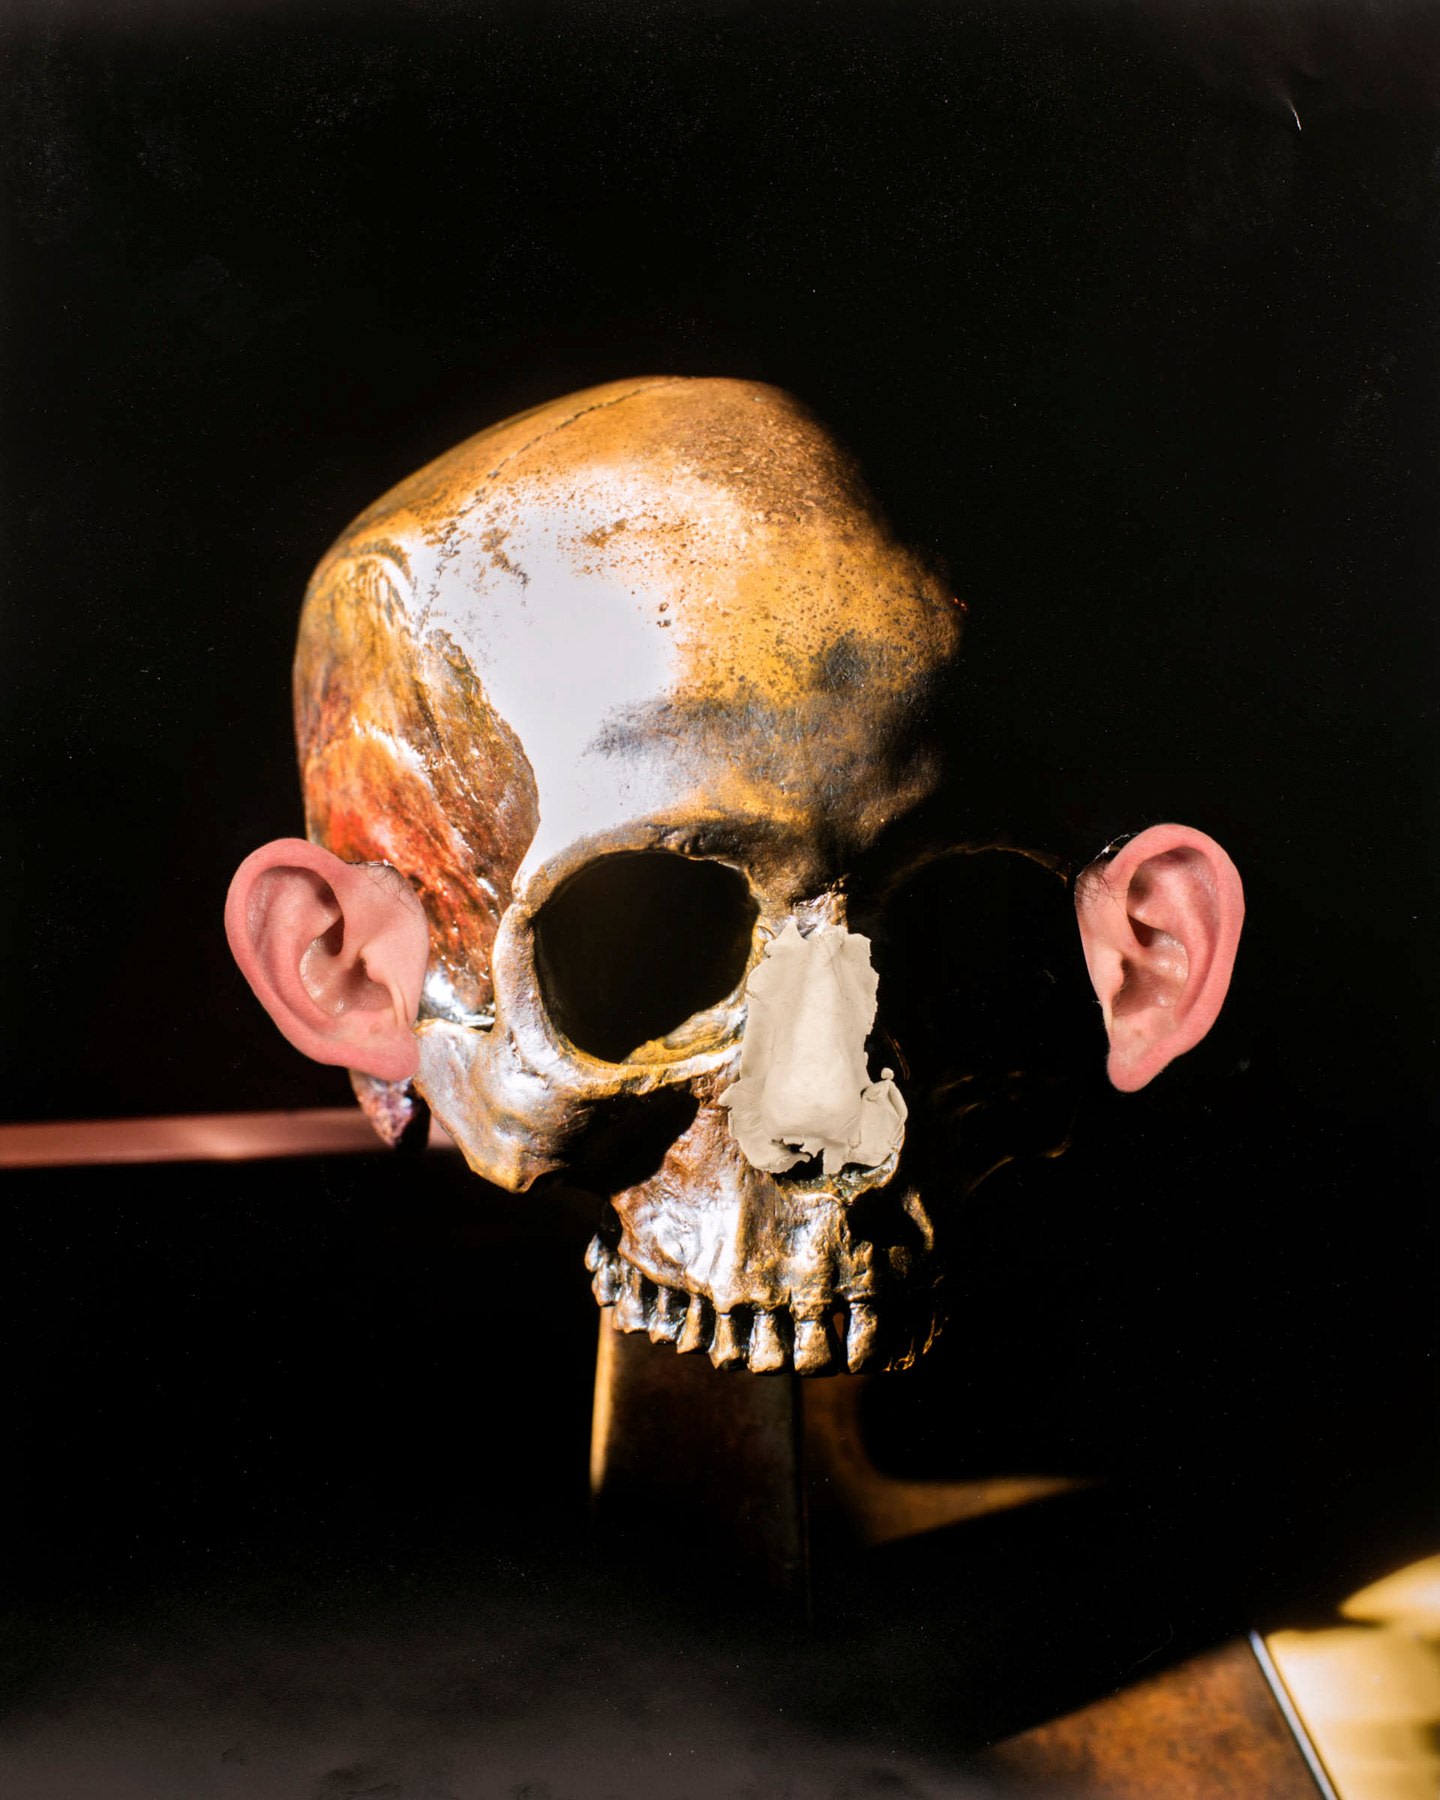 Brian Galderisi,&nbsp;Untitled, 2019. Archival pigment print, 34 x 37 1/2 inches.&nbsp;